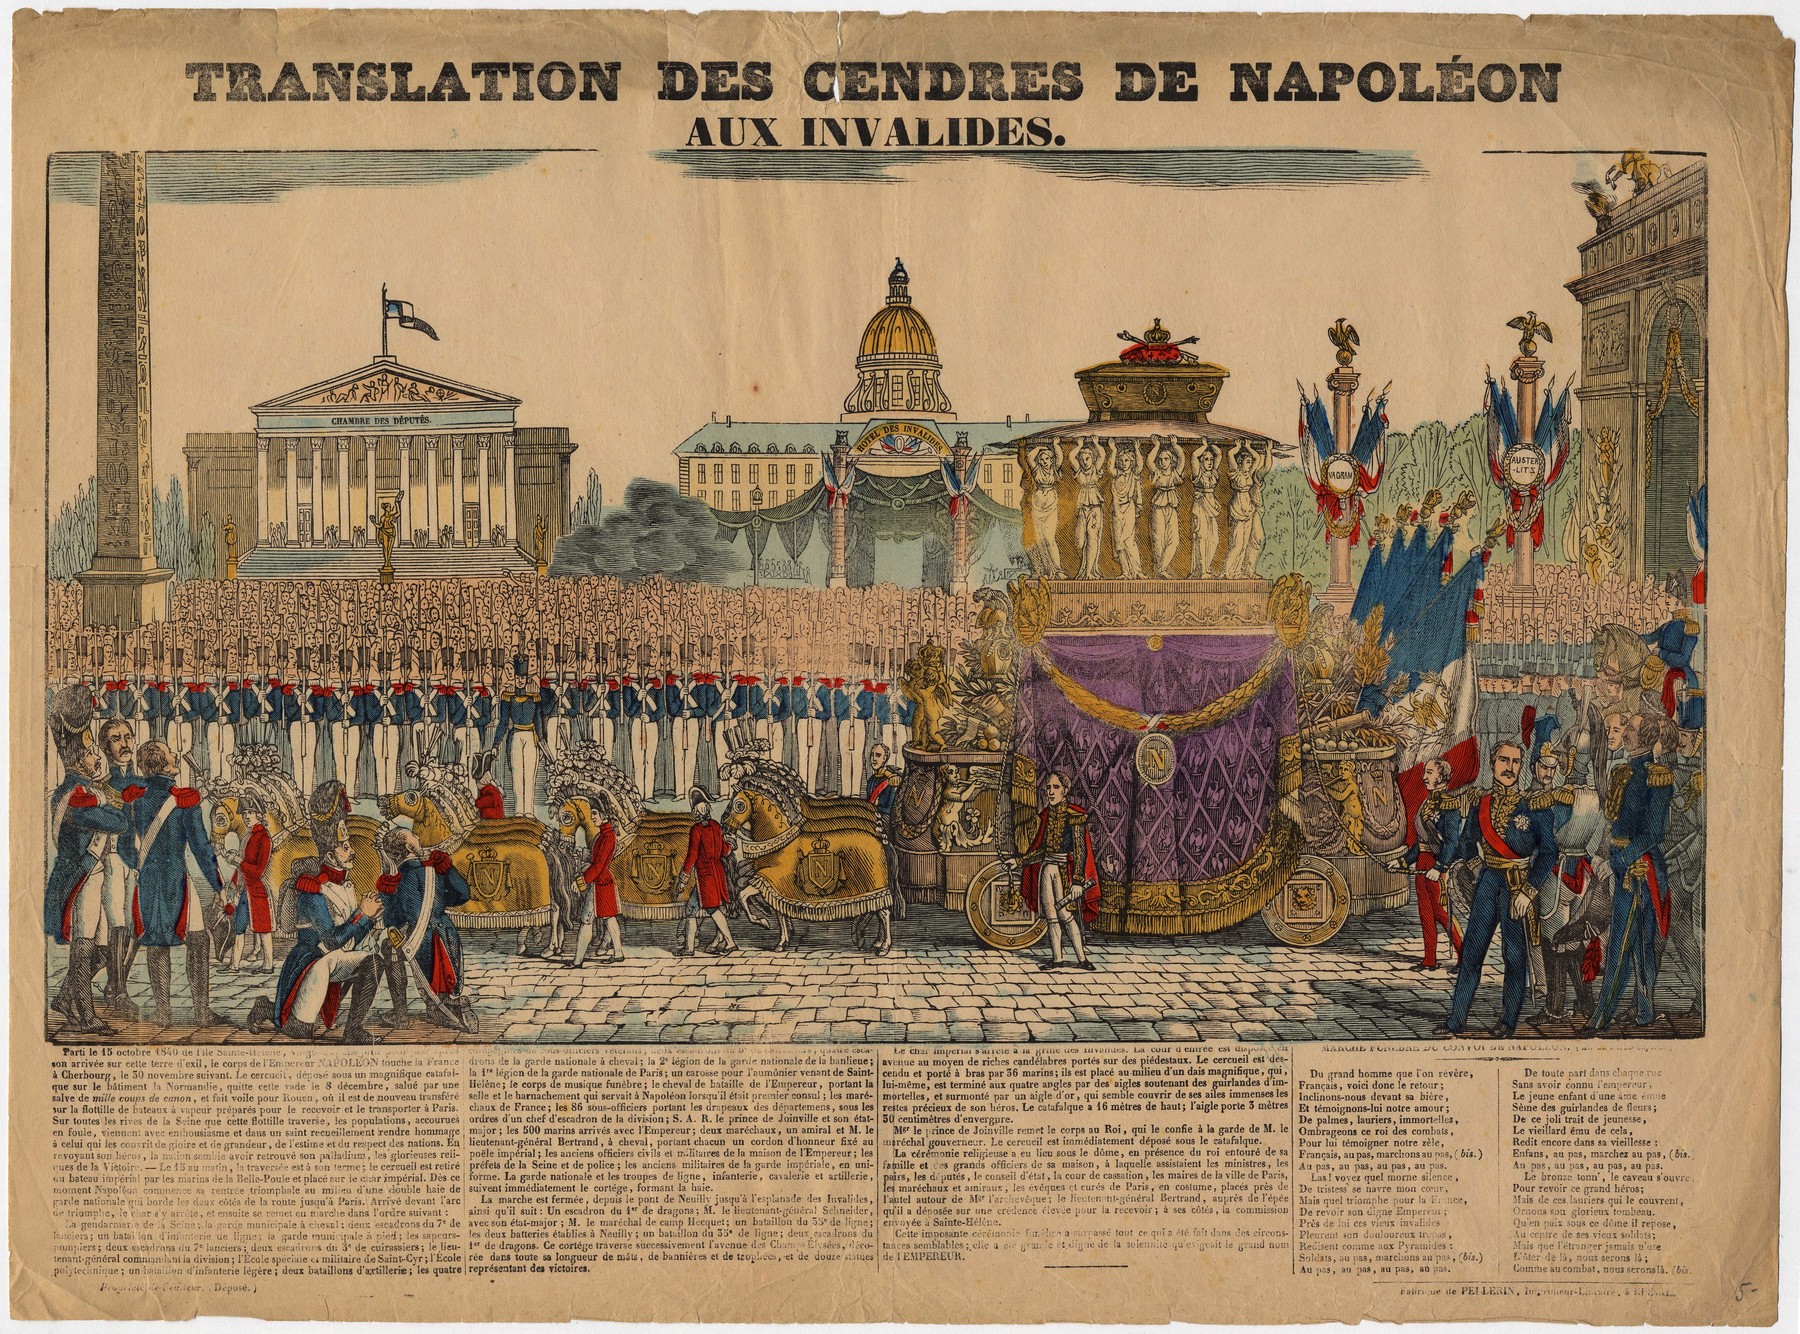 Contenu du Translation des cendres de Napoléon aux Invalides